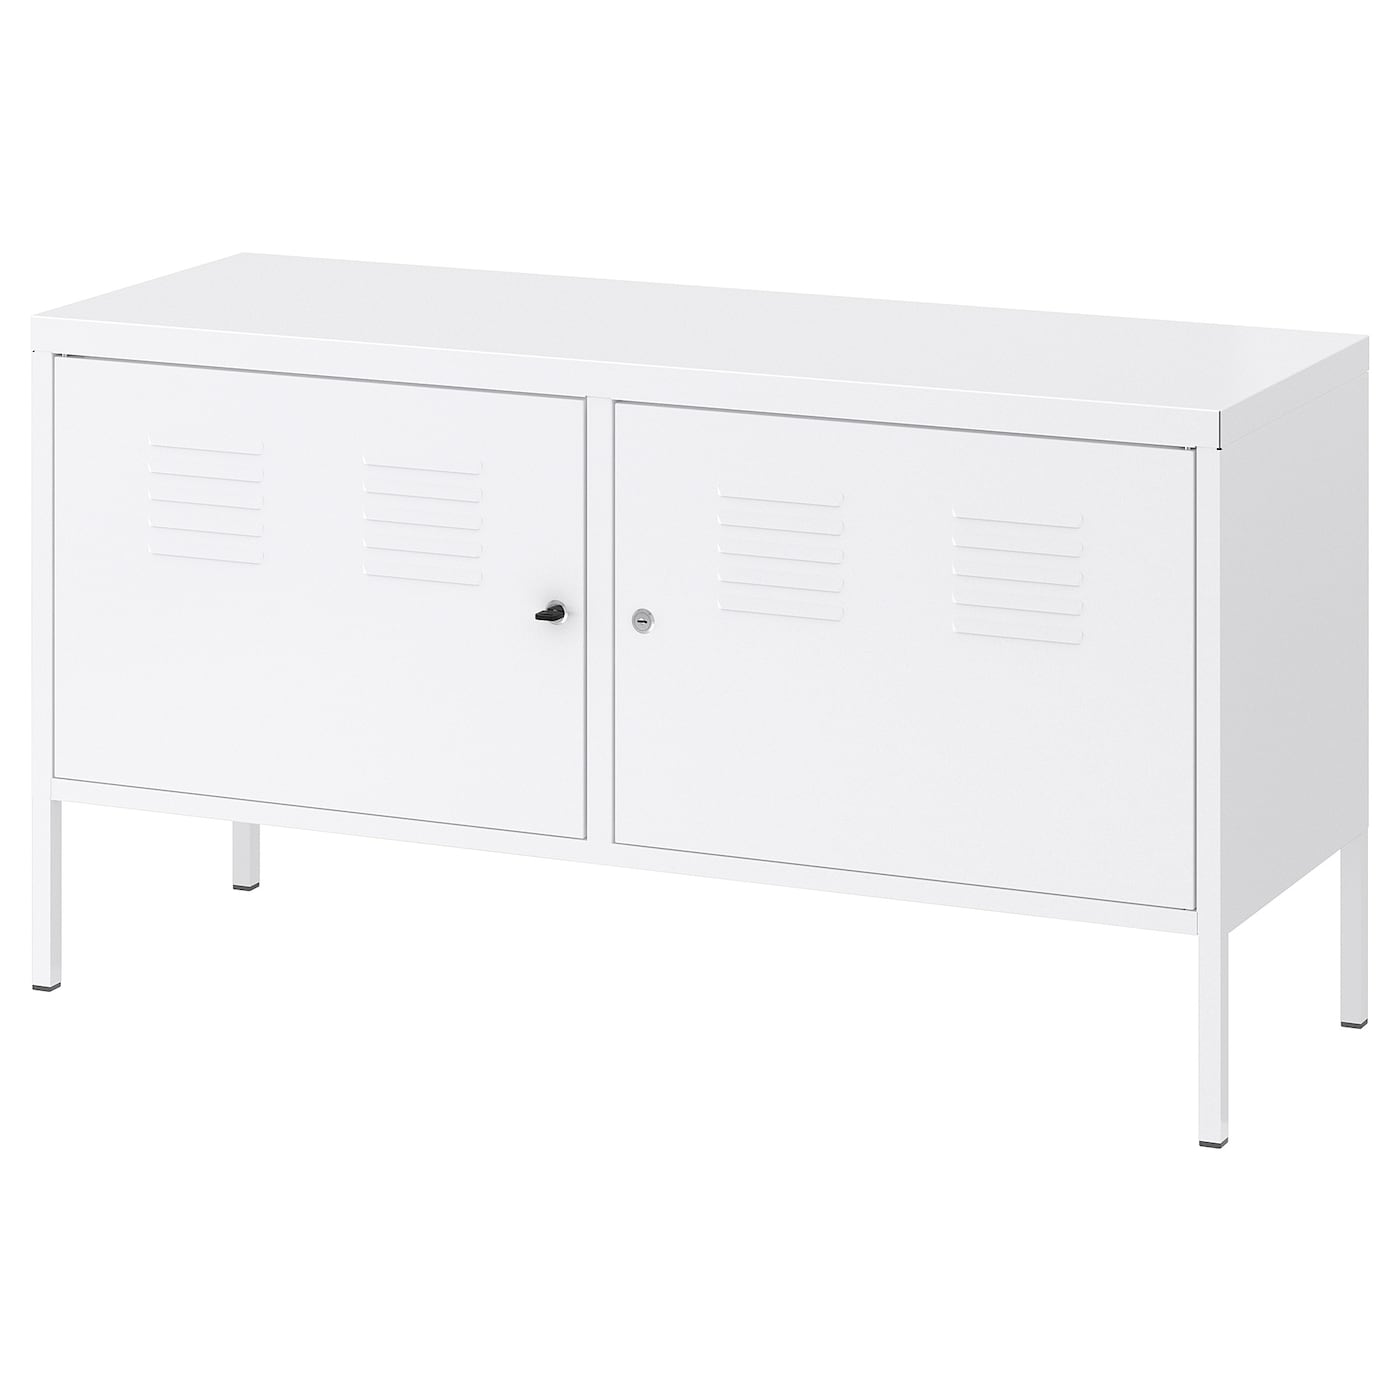 Шкаф - IKEA PS/ ИКЕА ПС, 119х63 см, белый